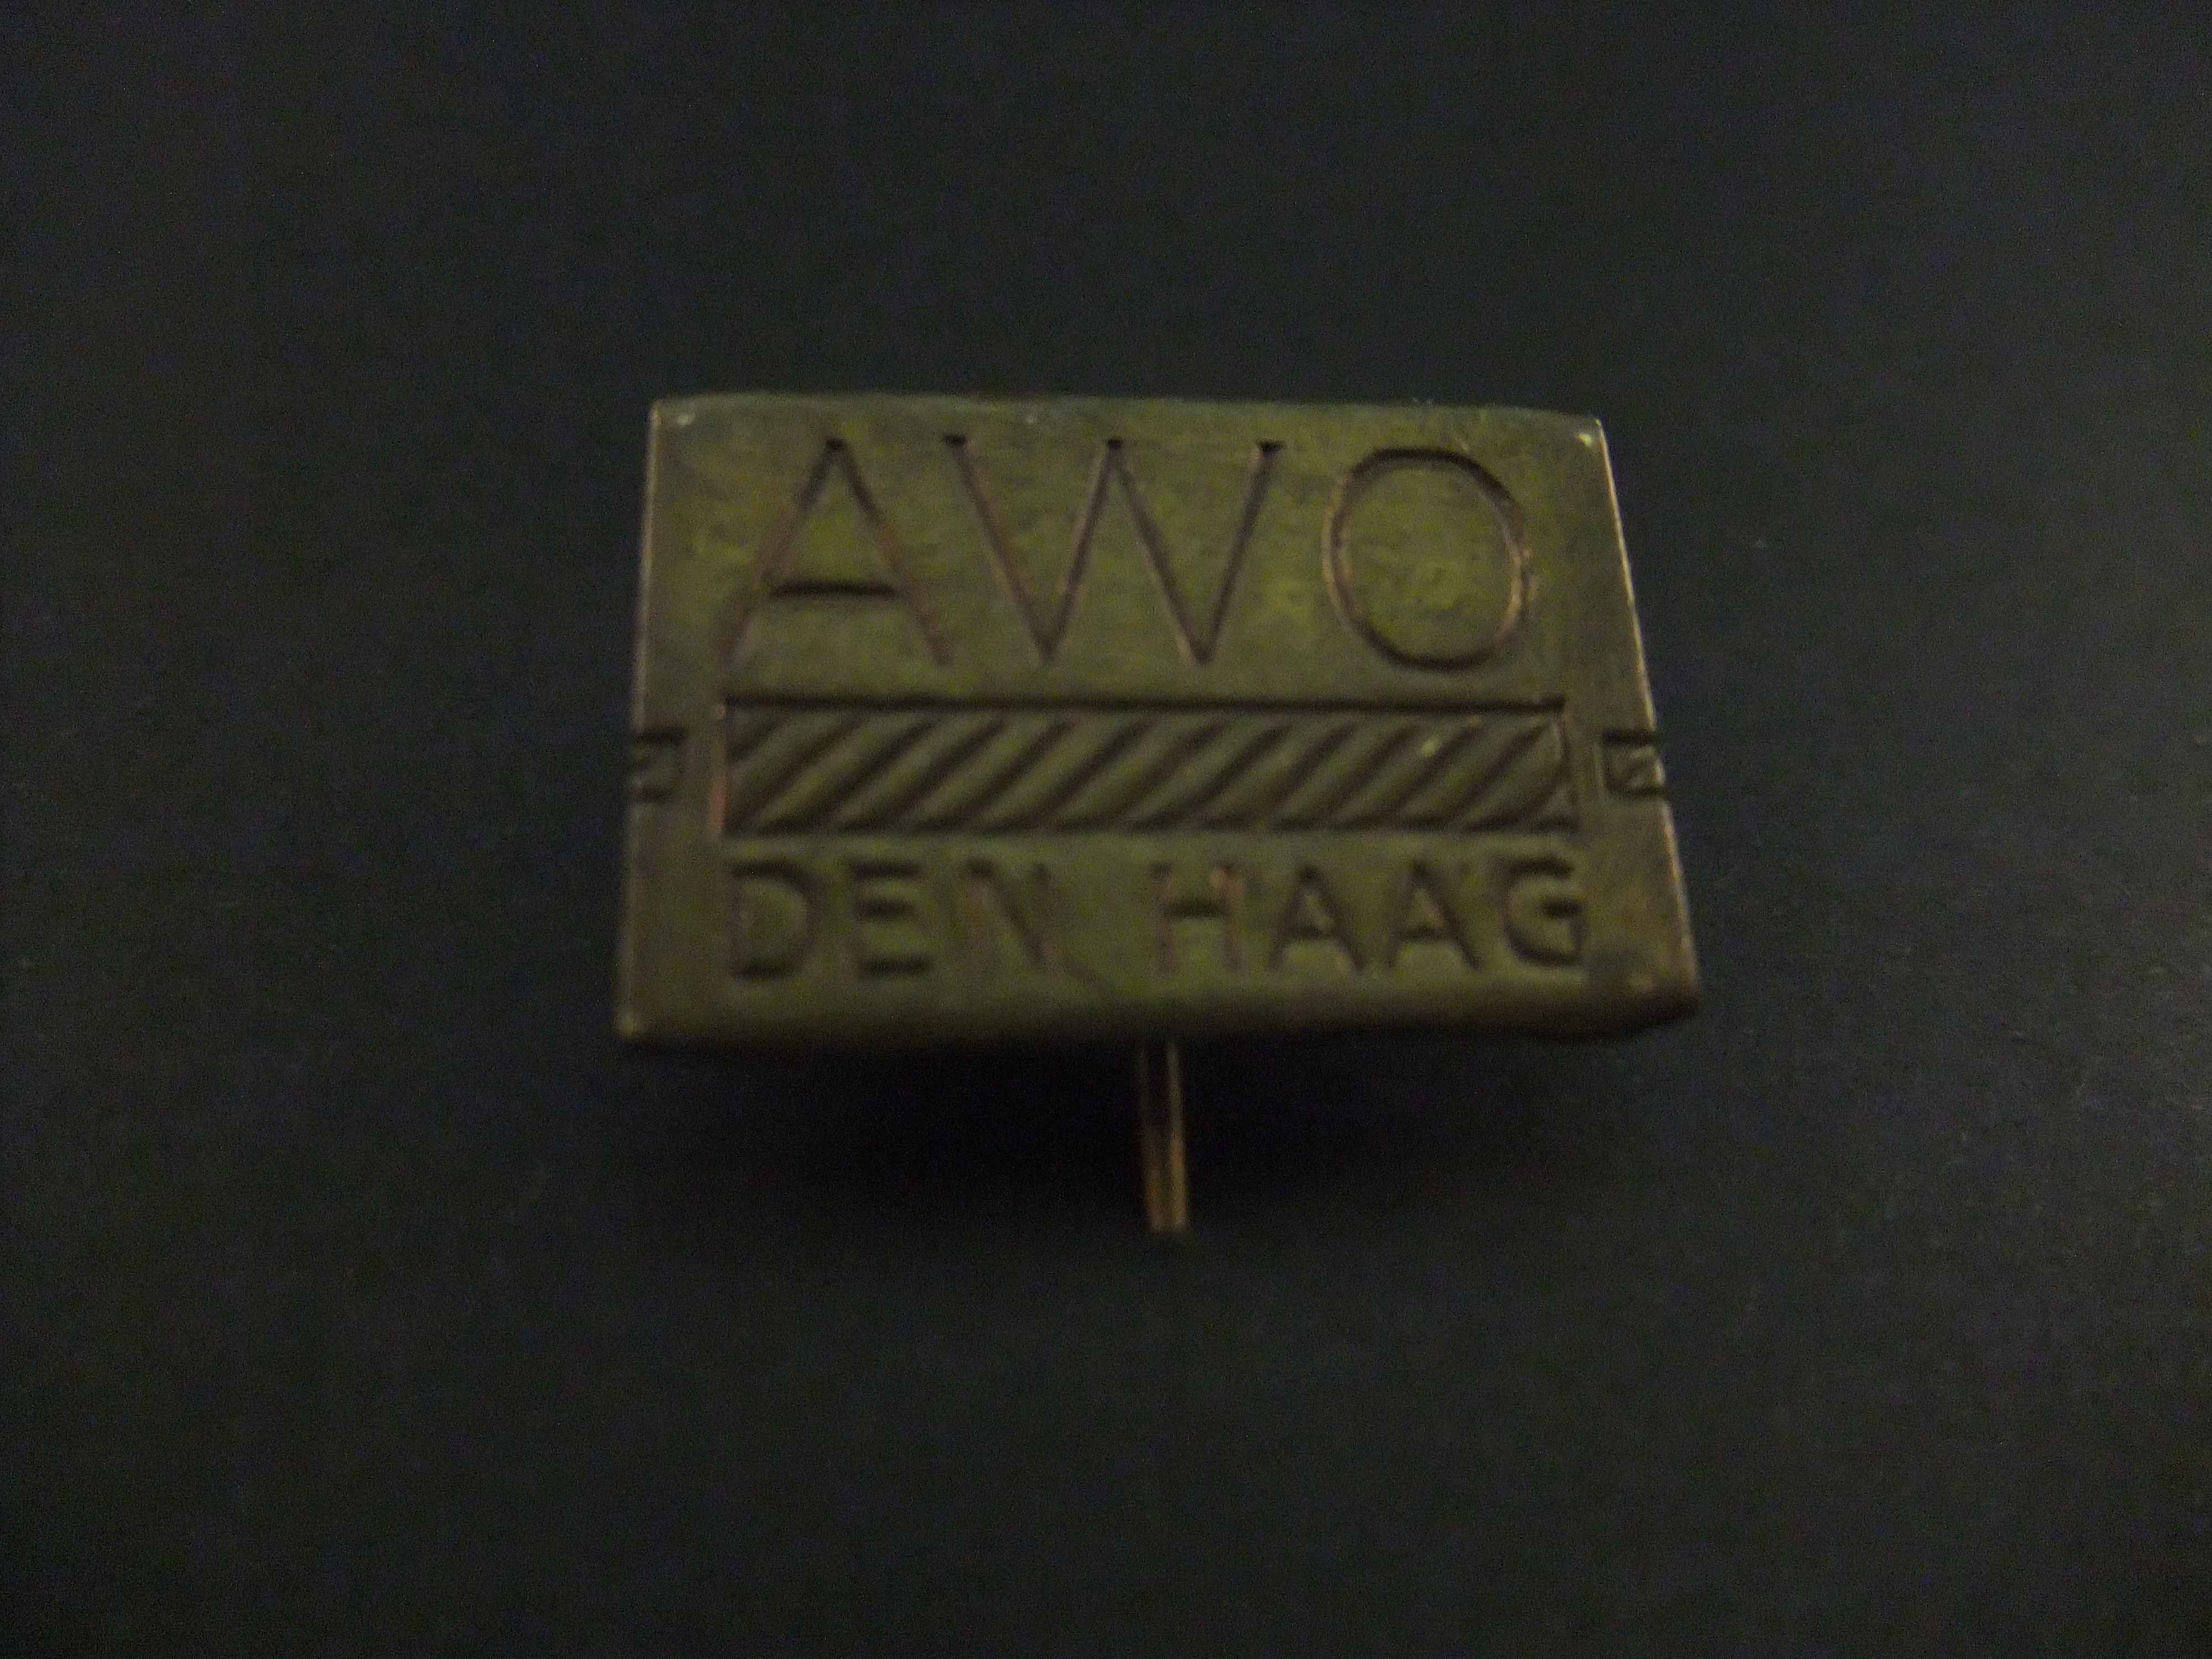 AWO, (Aarssen, Weggelaar en Overwijn), machinefabriek